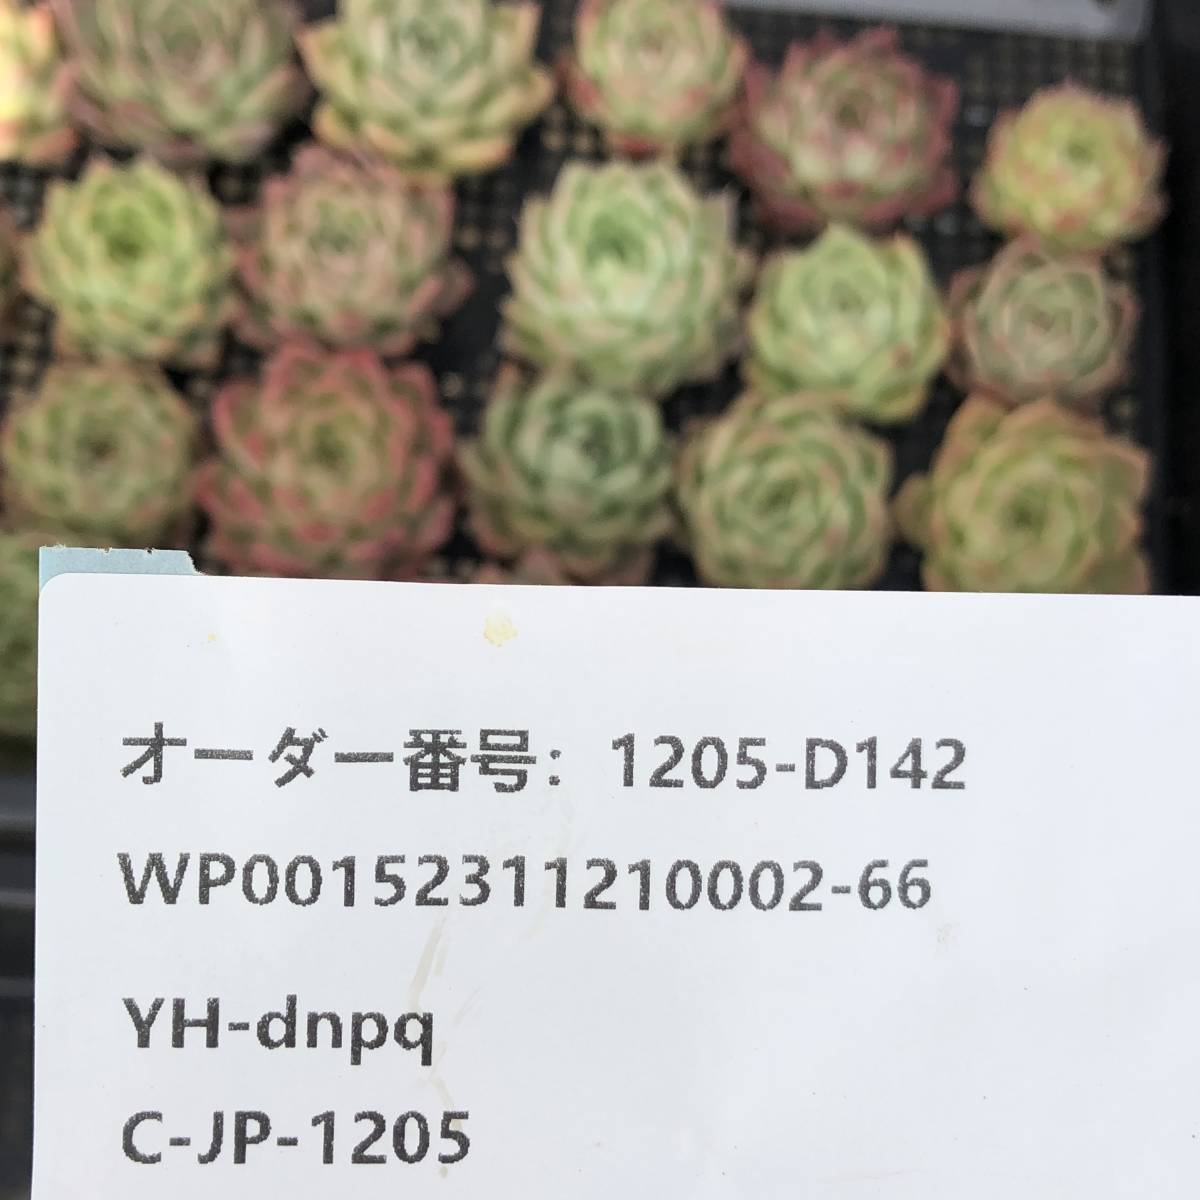 多肉植物24個 1205-D142 リーフレタス エケベリア カット苗 寄植え_画像3